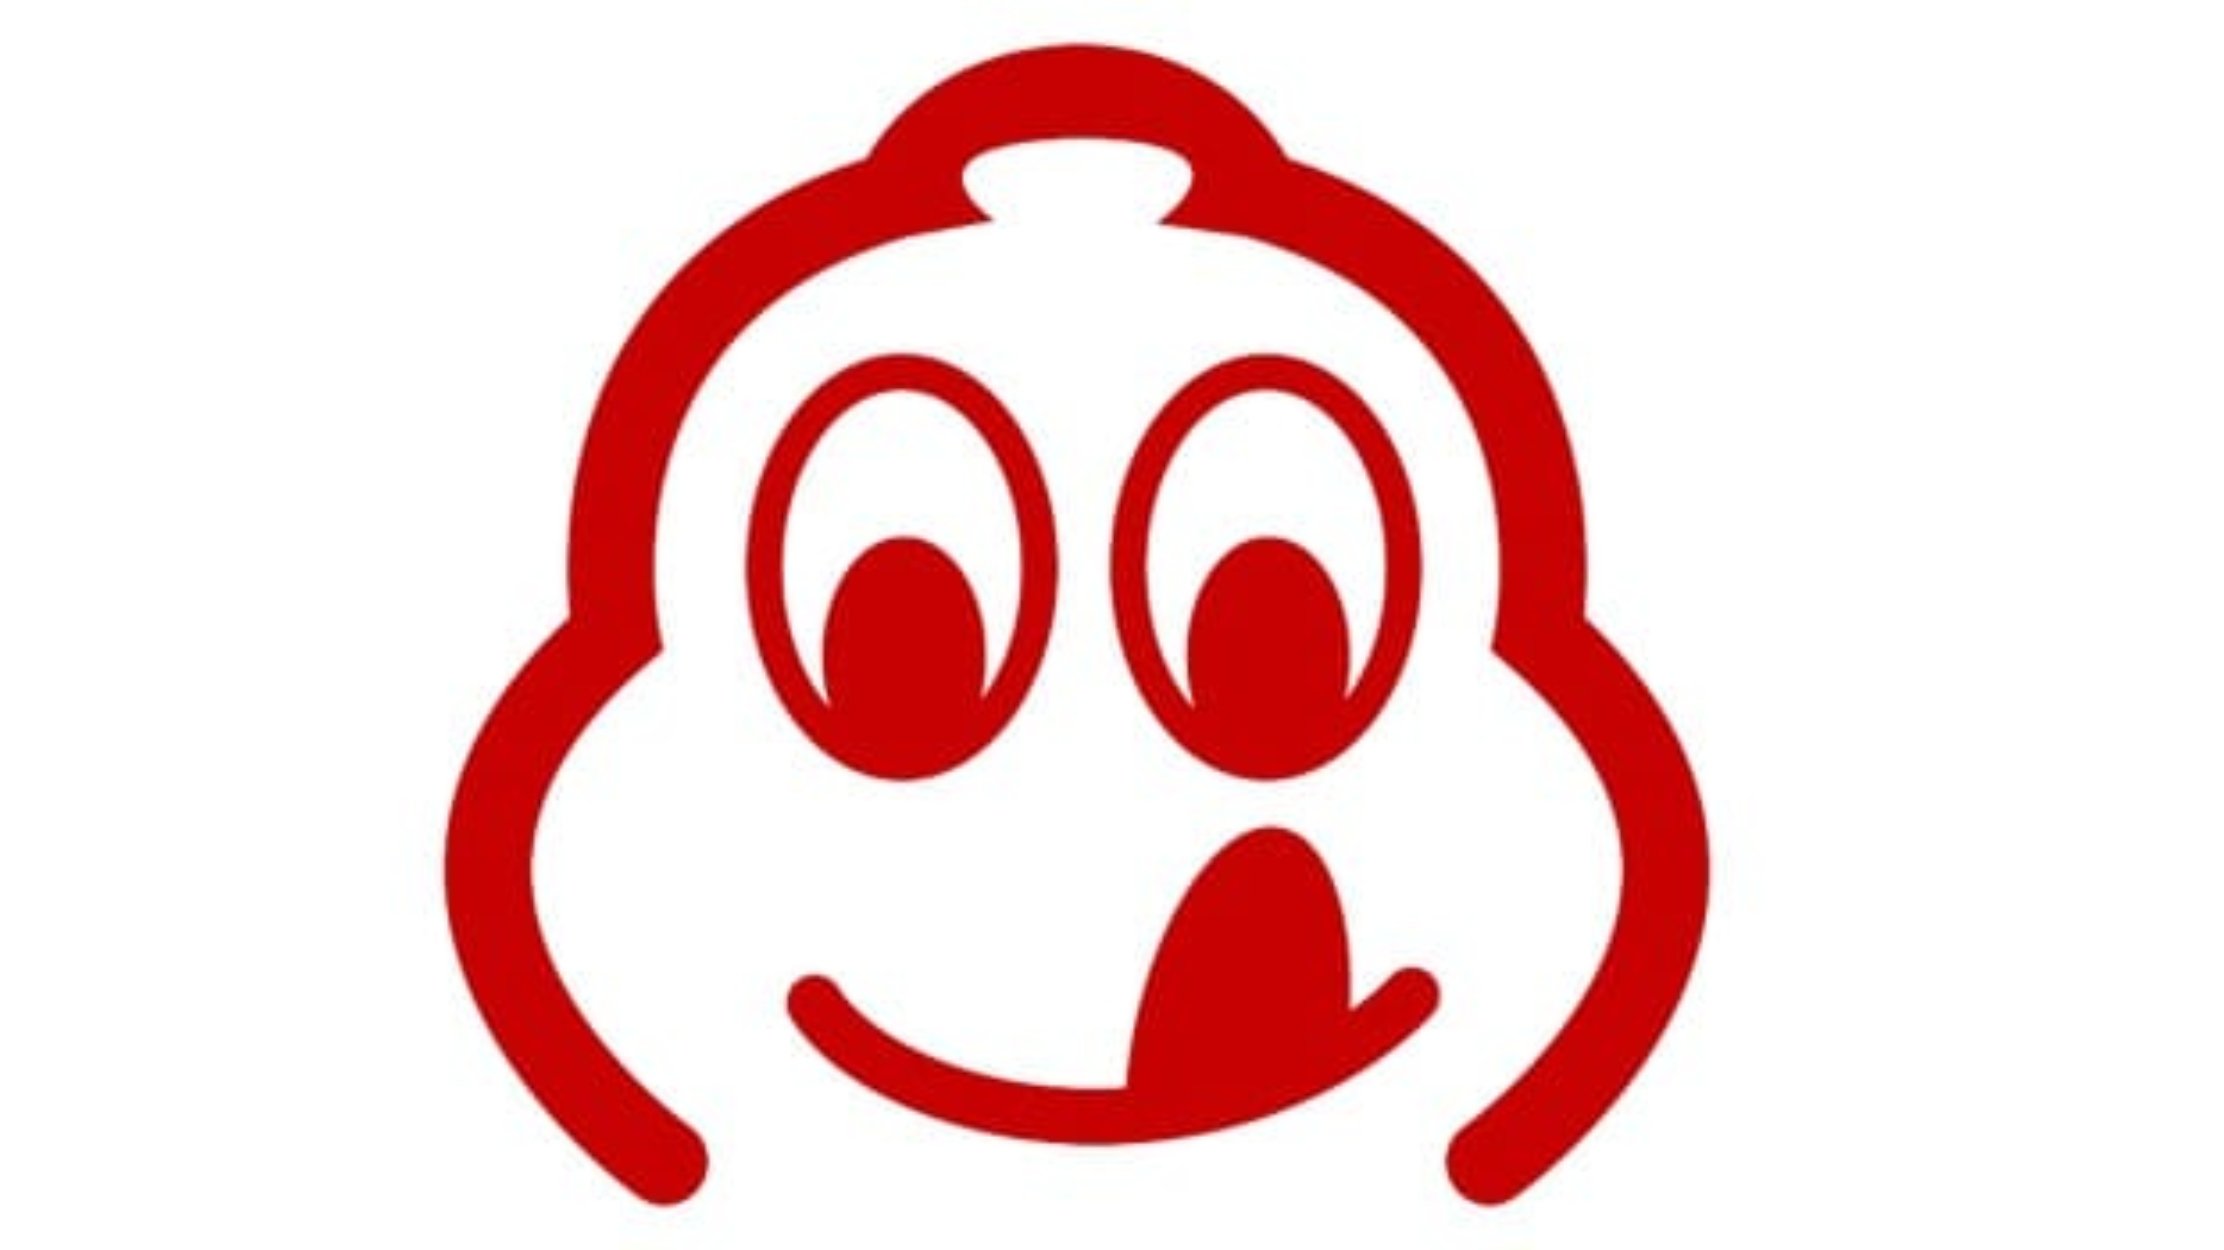 Este é o símbolo atual dos Bib Gourmand, sendo que &quot;Bib&quot; é o diminutivo de Bibendum, o nome do famoso boneco da Michelin.